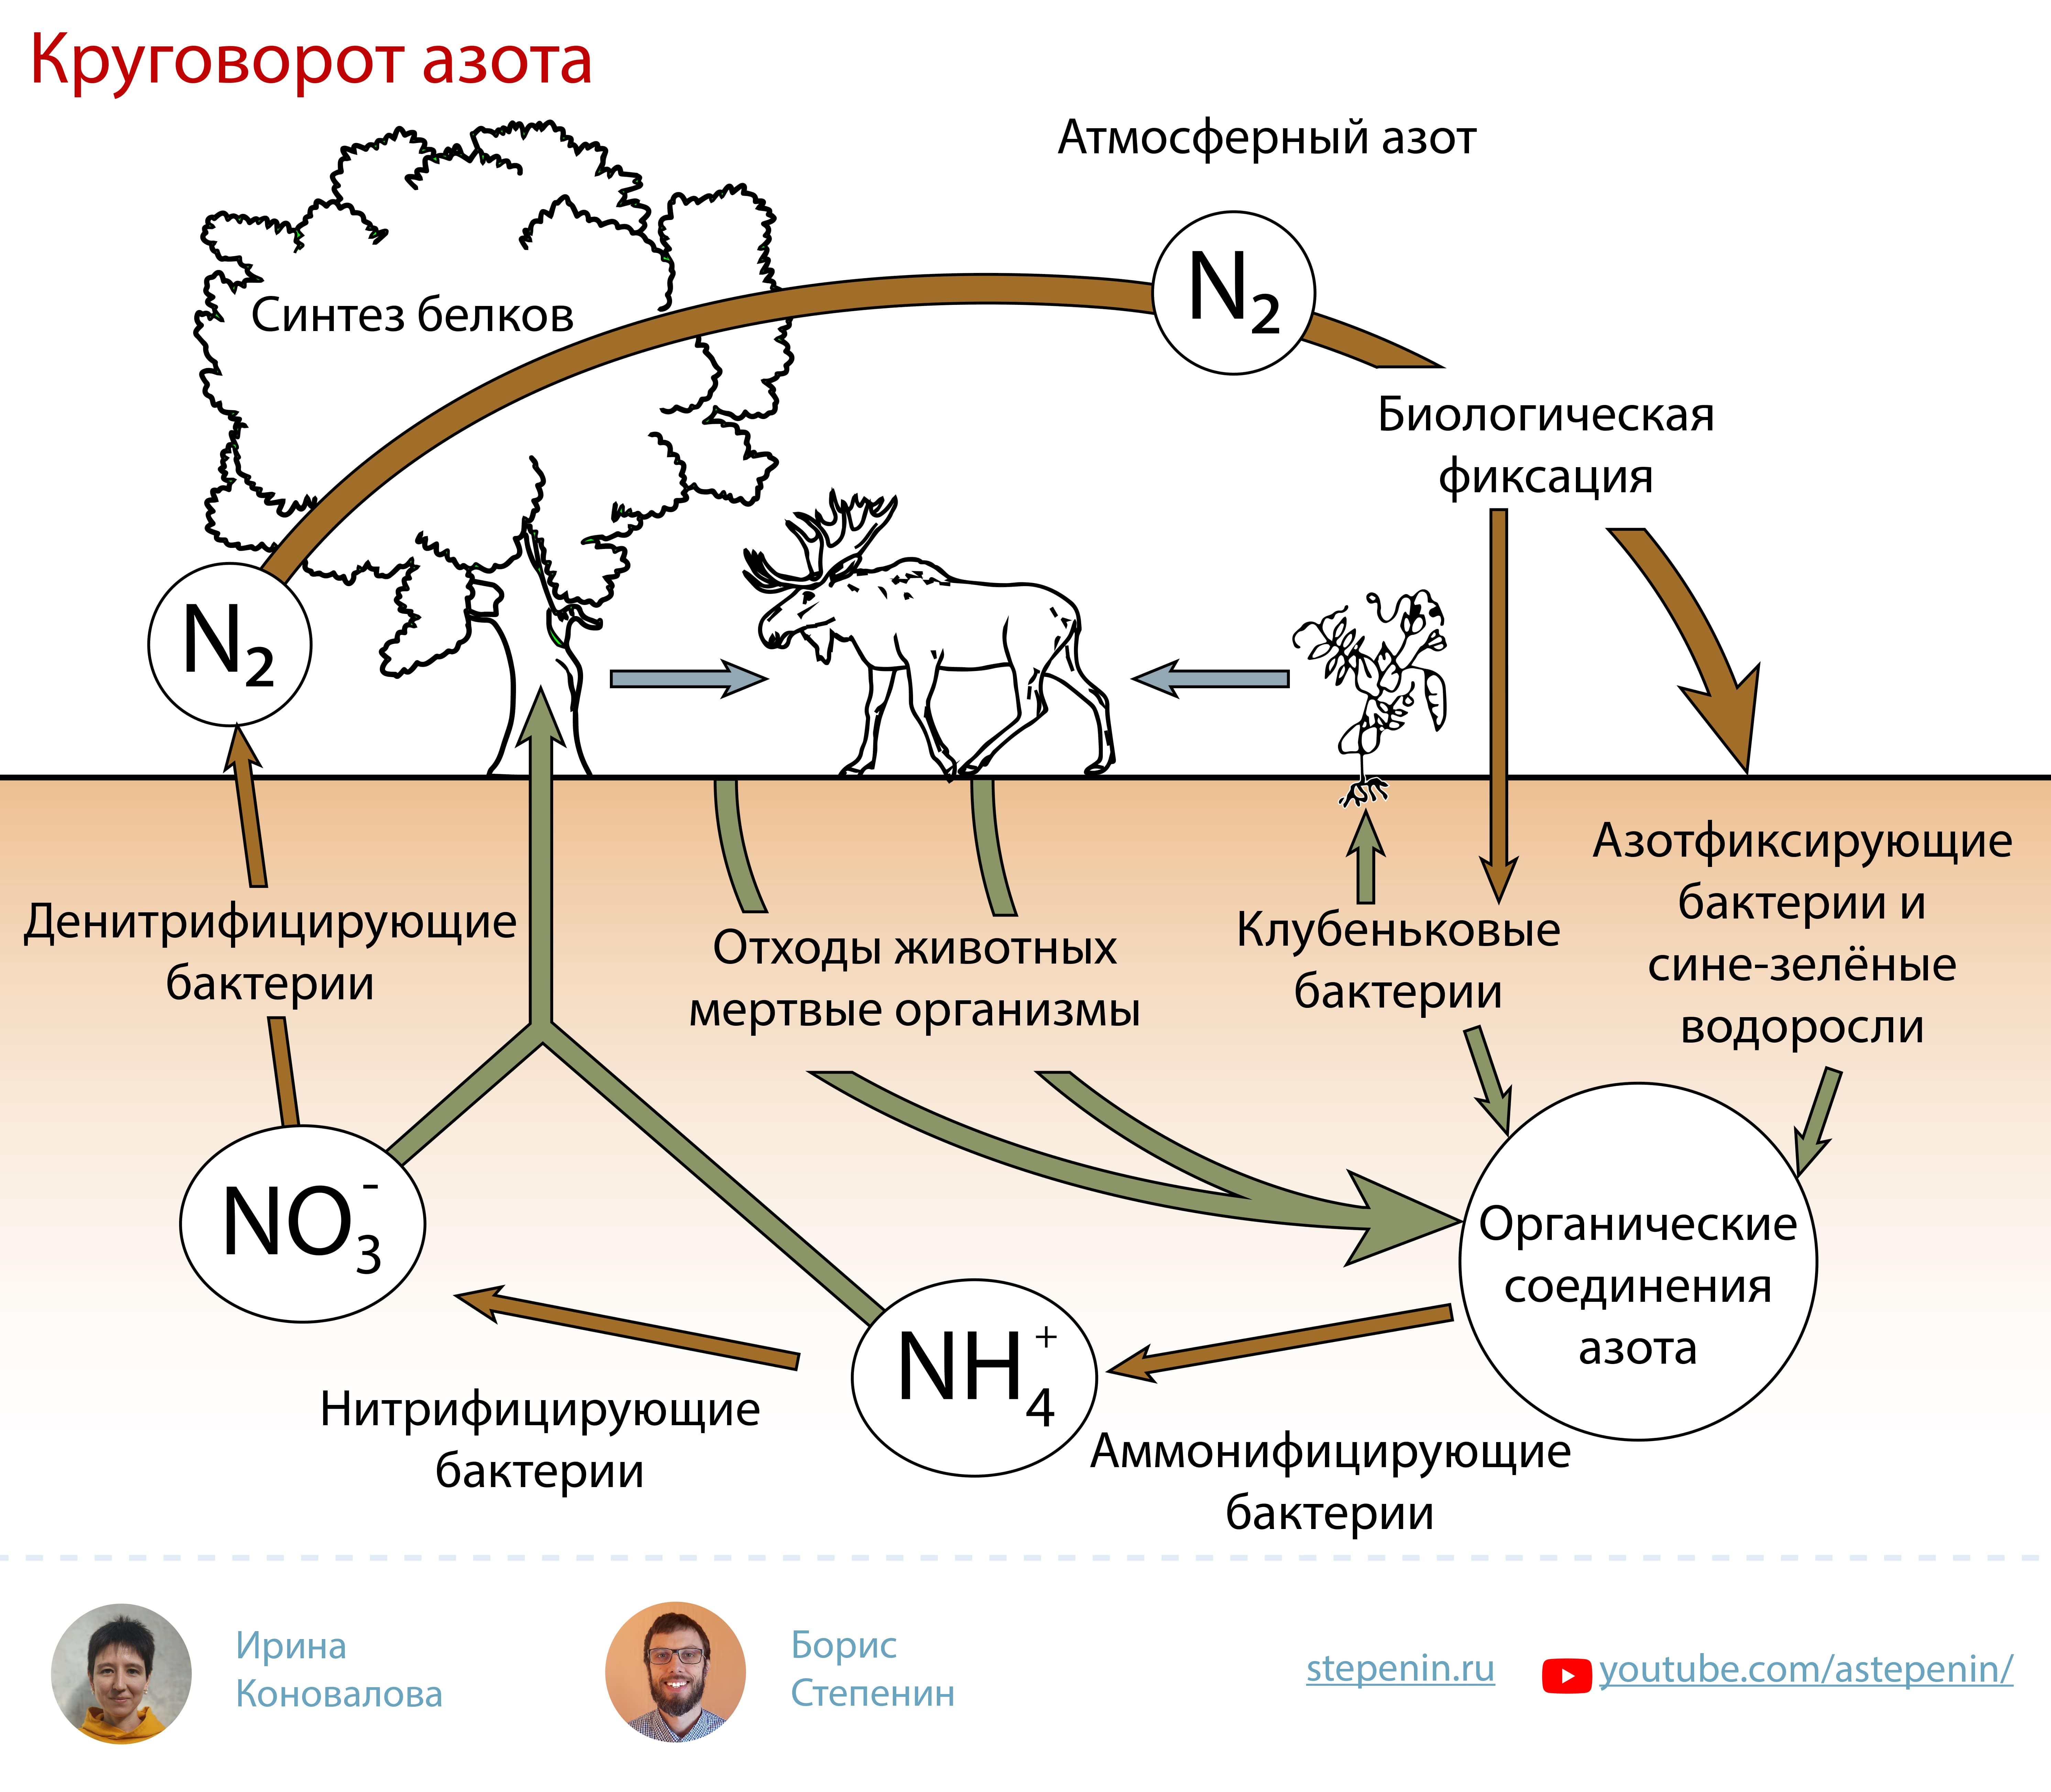 Какие организмы способны усваивать азот. Биогеохимический цикл азота схема. Биологическая роль азота круговорот. Атмосферный азот круговорот веществ. Круговороттазота в природе.